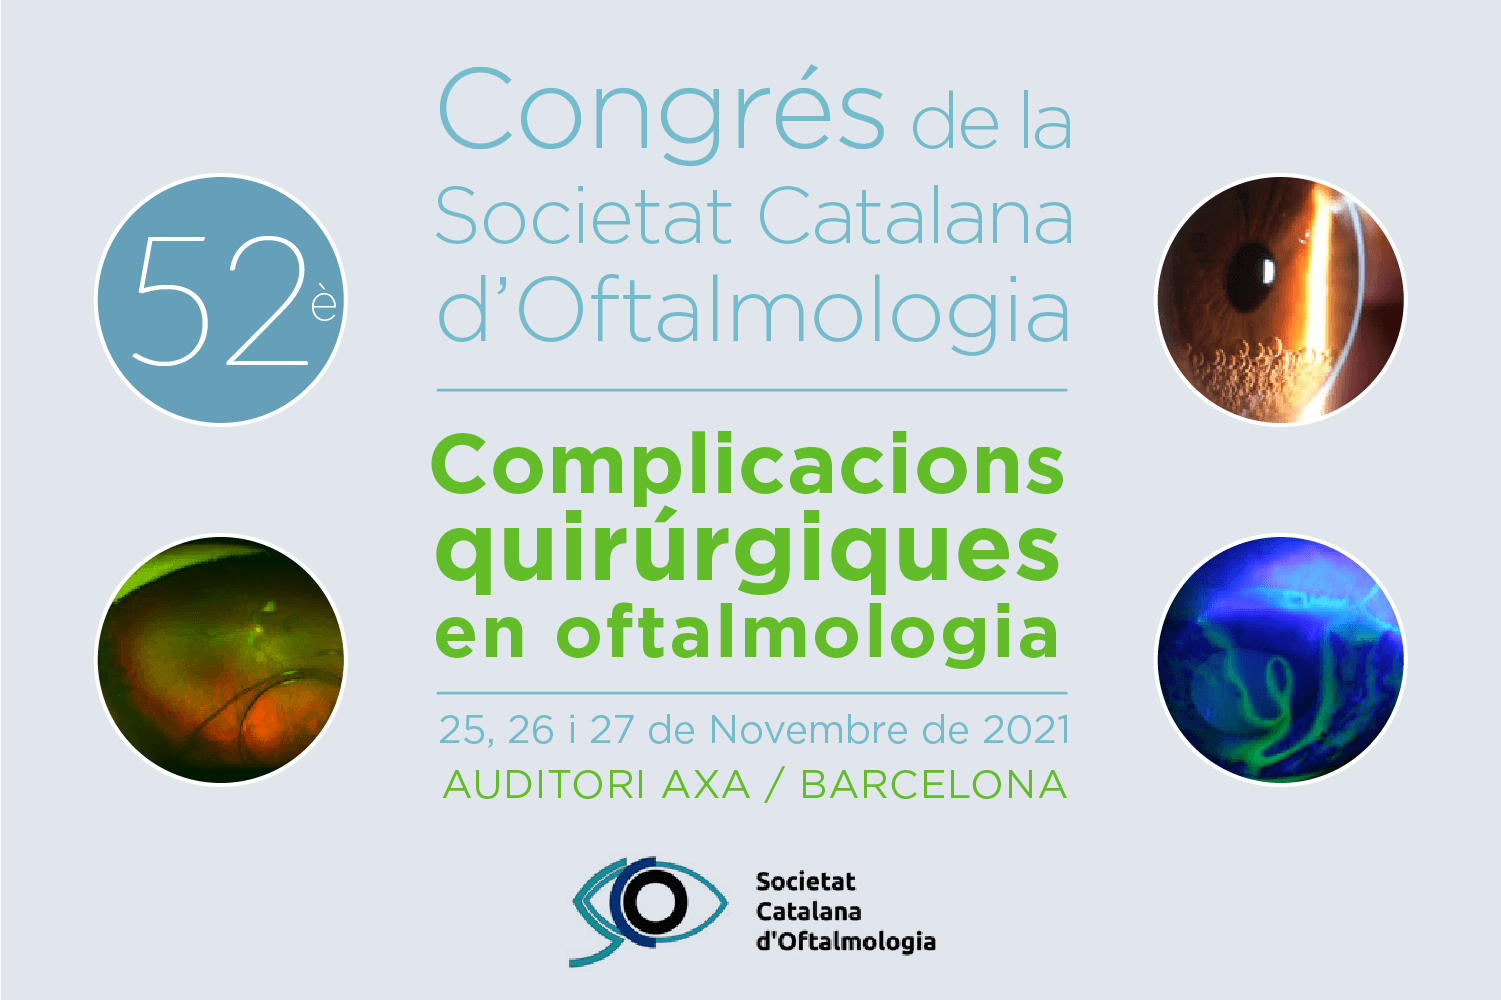 Miembros del equipo de ICR participan en el 52º Congreso de la Sociedad Catalana de Oftalmología